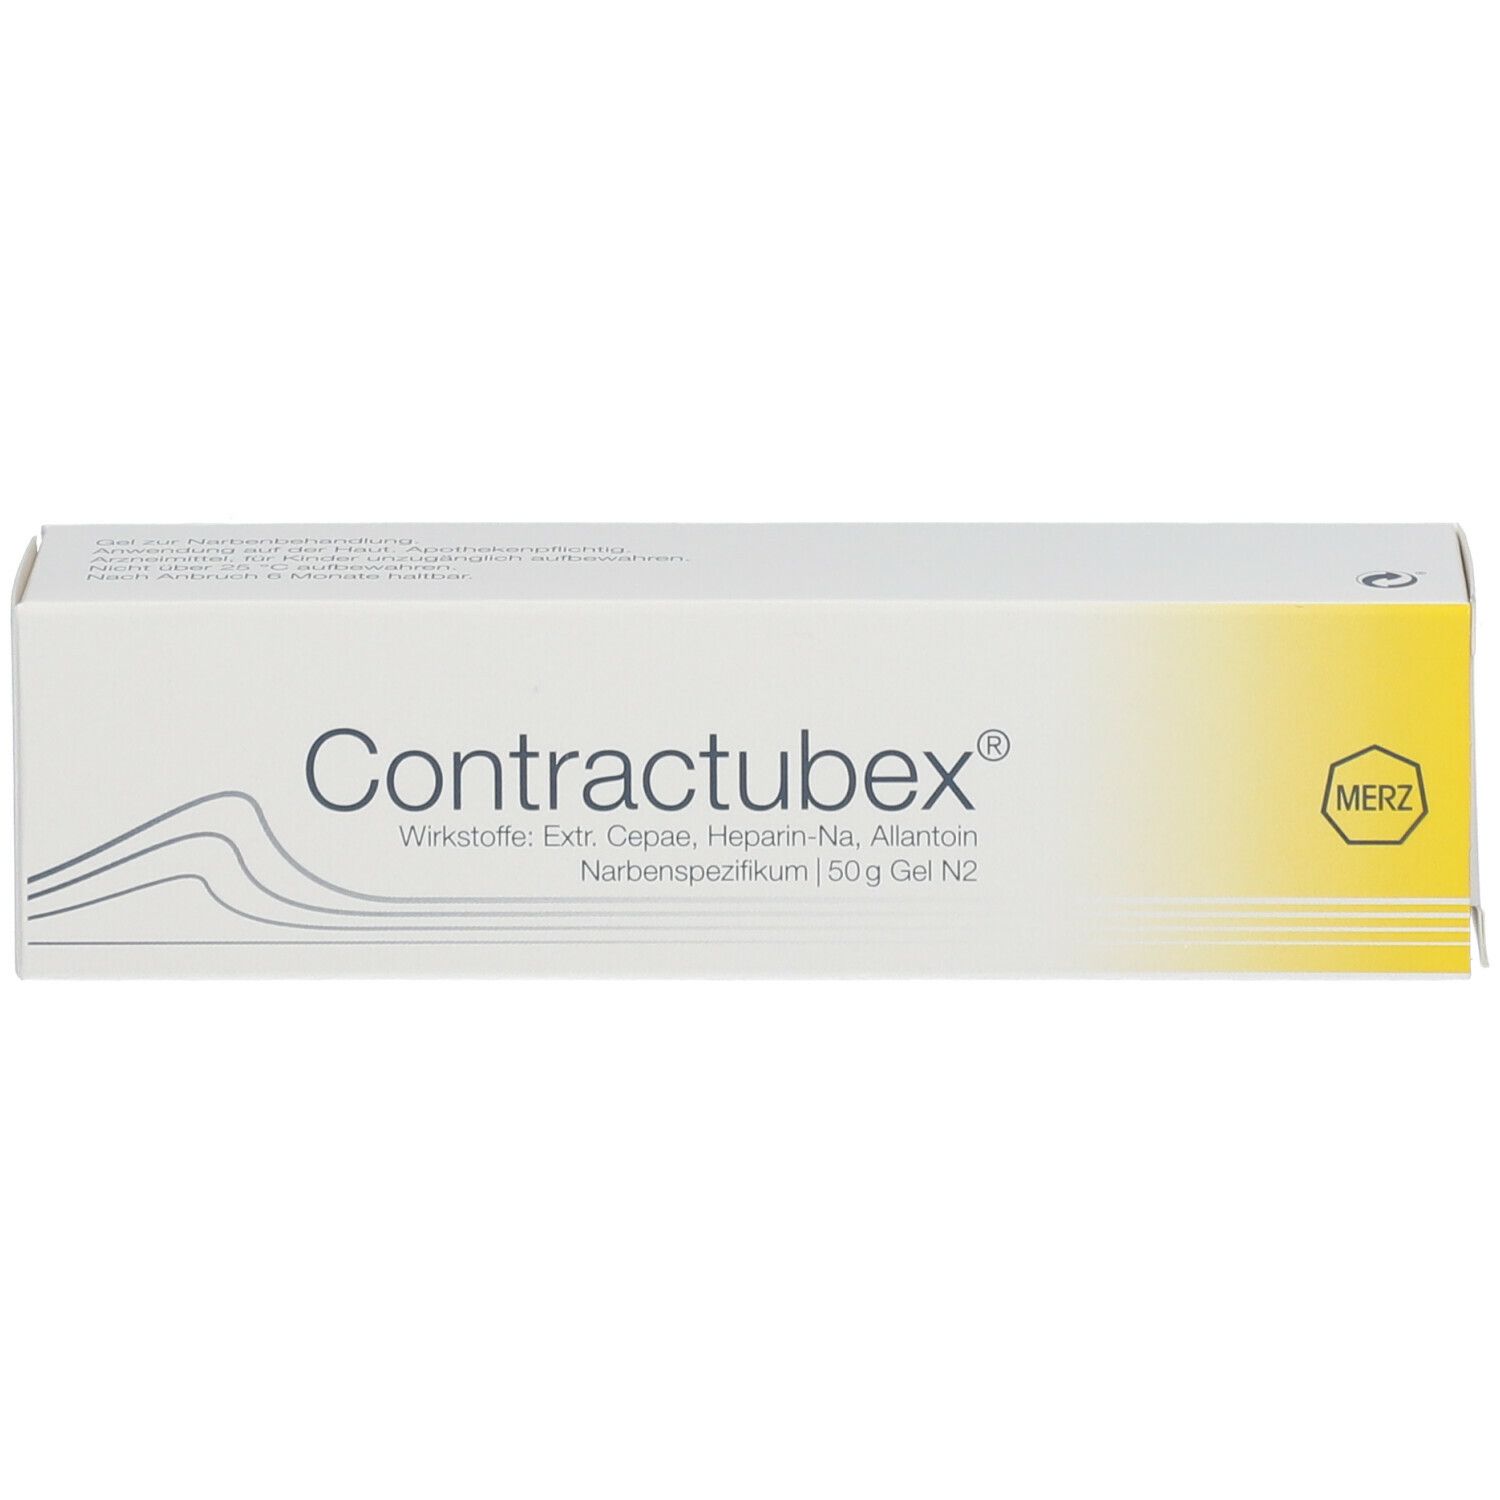 Contractubex®